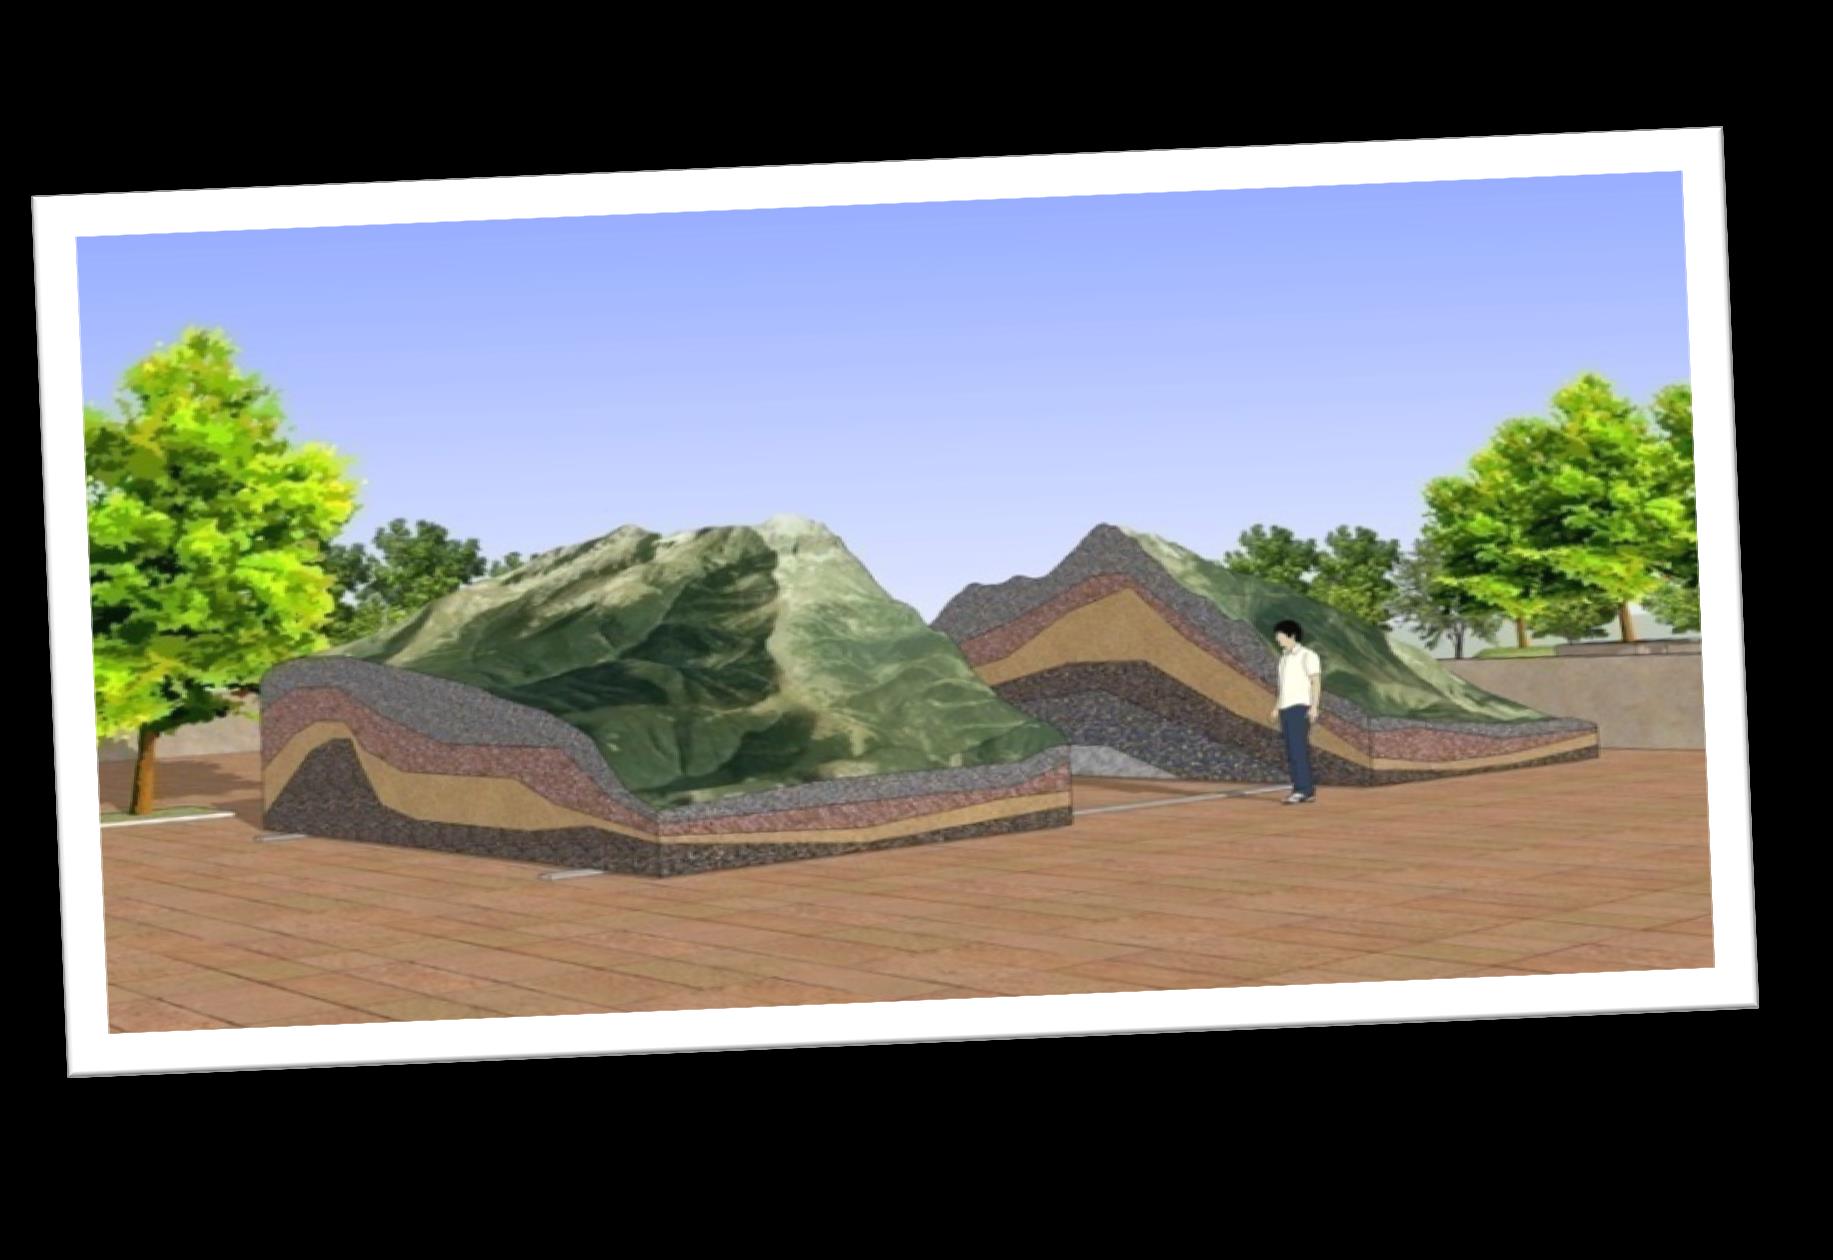 Unikatowym rozwiązaniem będzie możliwość poznania wnętrza góry. Rozsuwana, zewnętrzna makieta Babiej Góry ukaże odwiedzającemu budowę geologiczną.